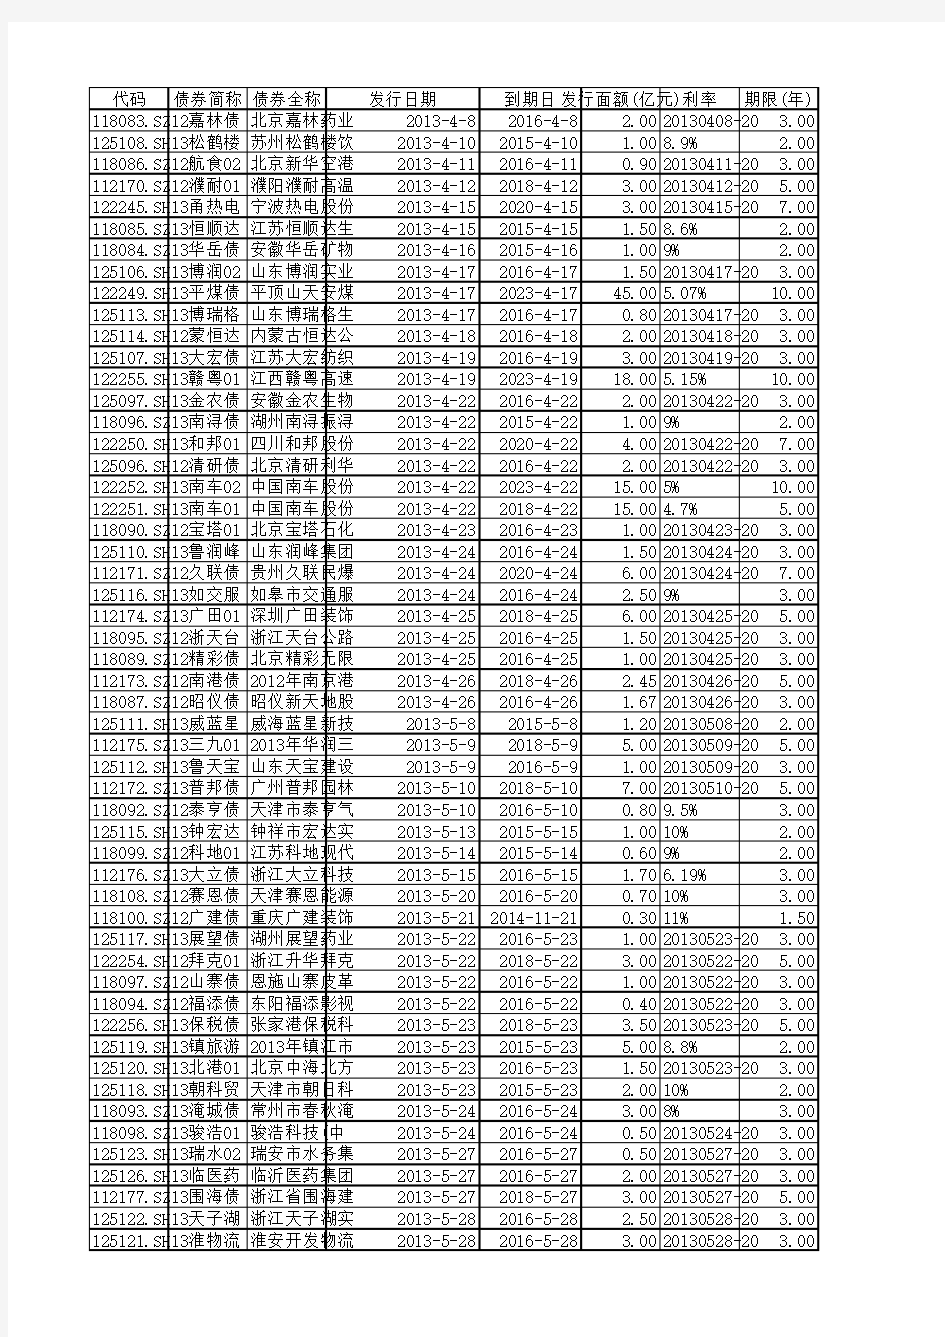 截止2016年4月6日公司债发行名单